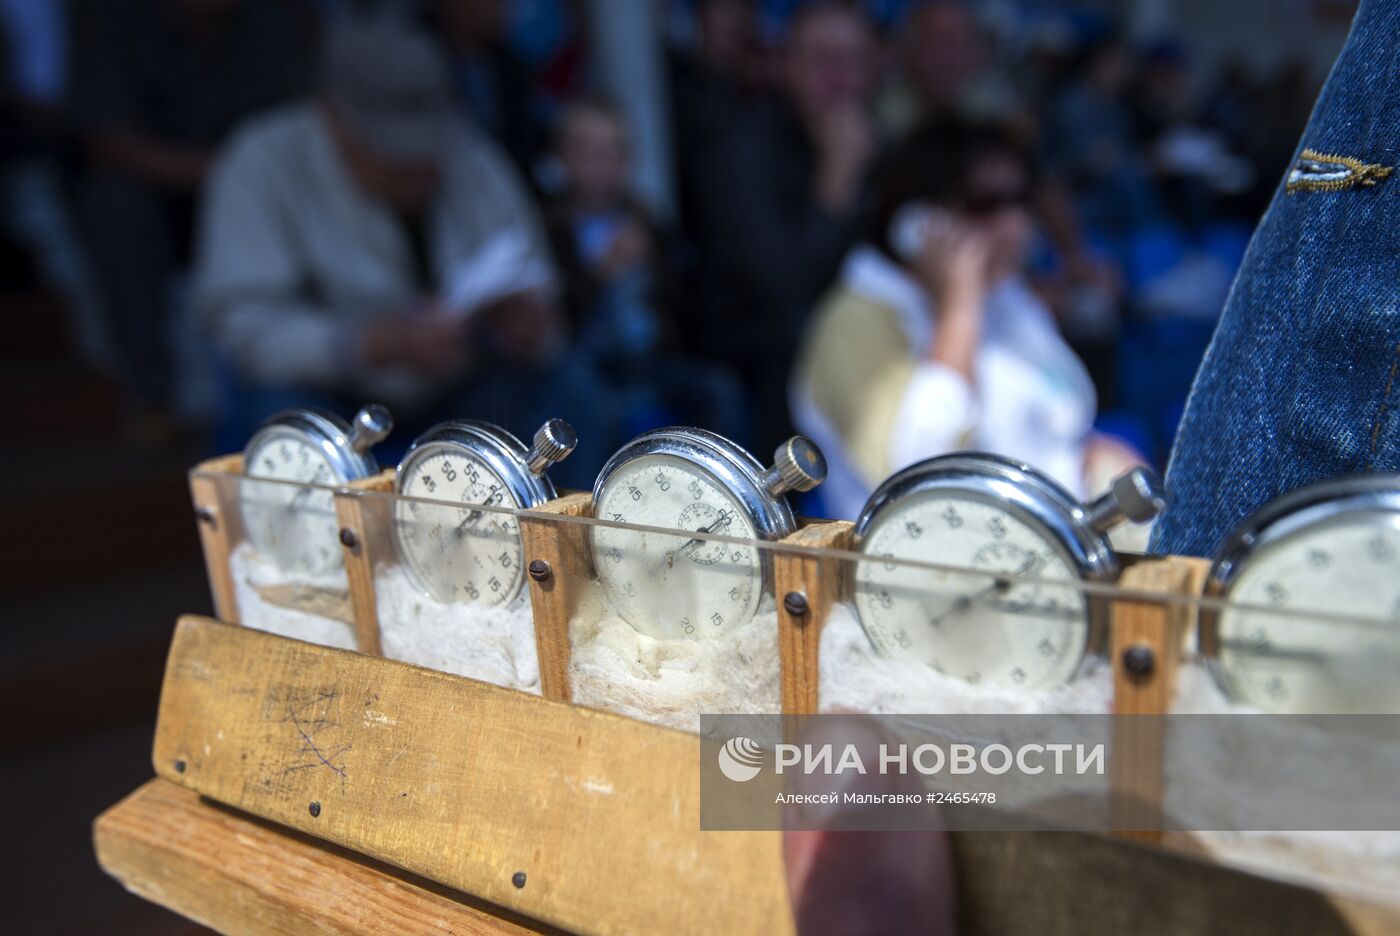 Всероссийский фестиваль орловского рысака 2014